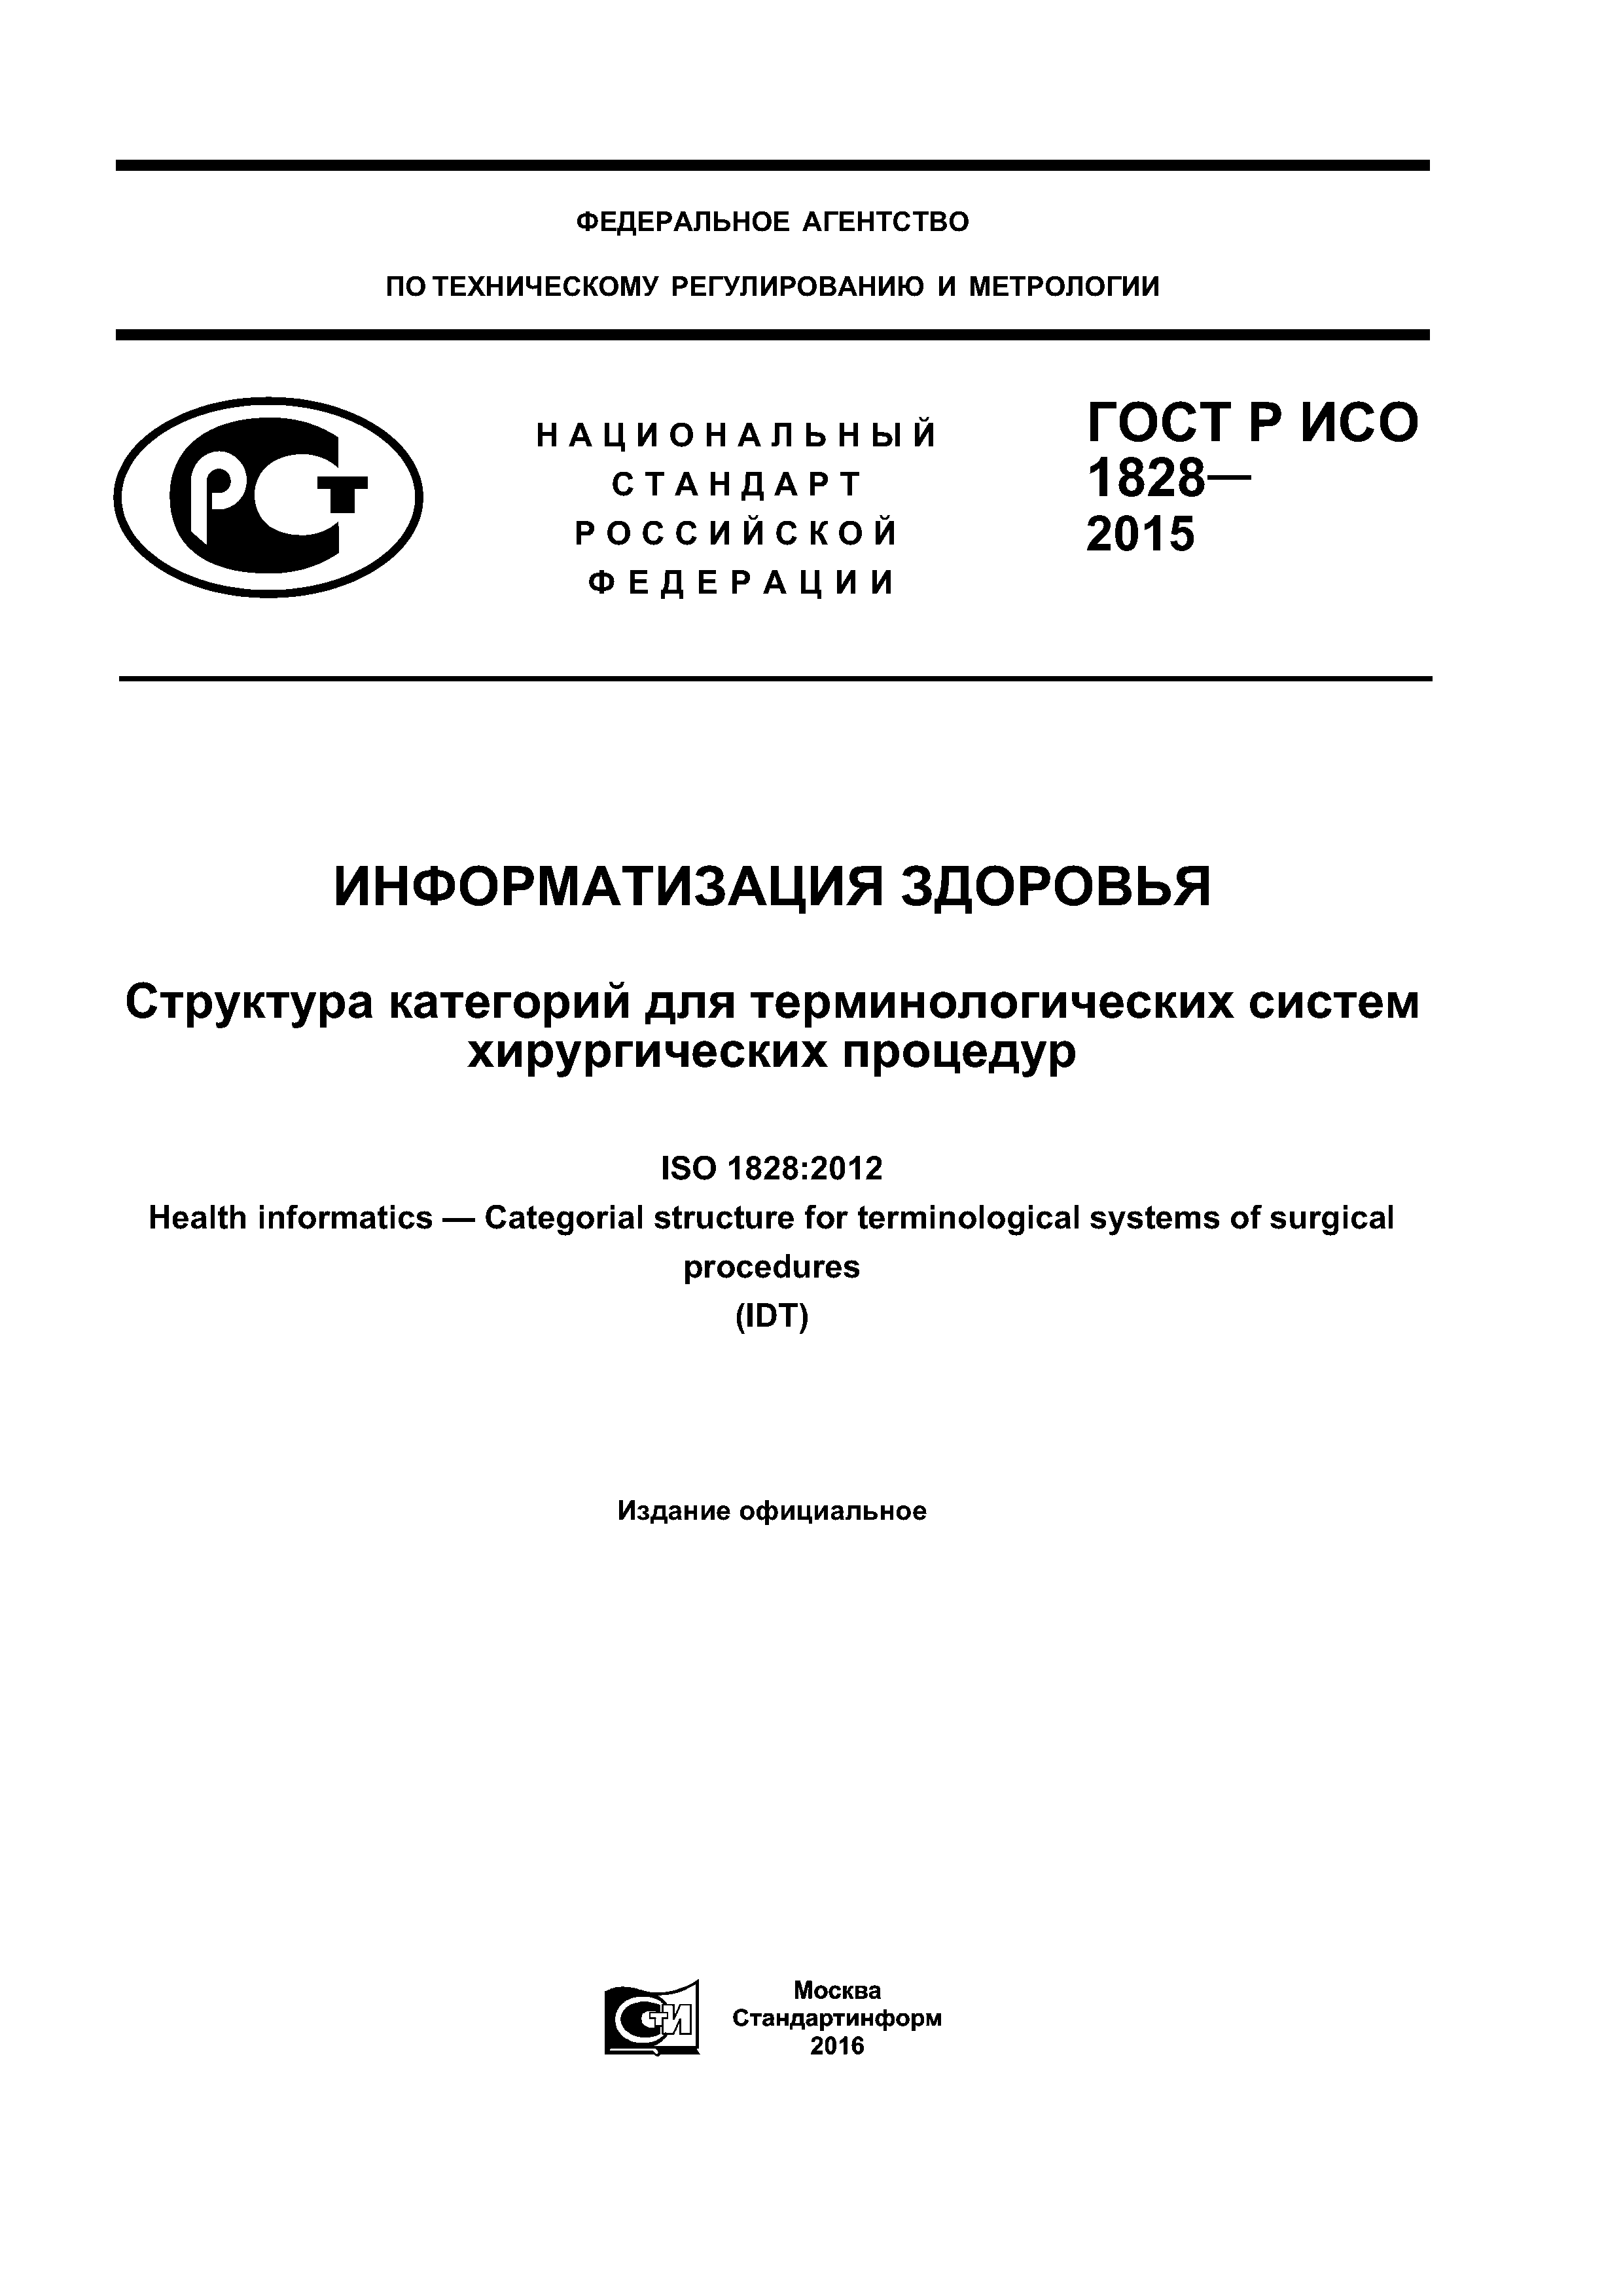 ГОСТ Р ИСО 1828-2015